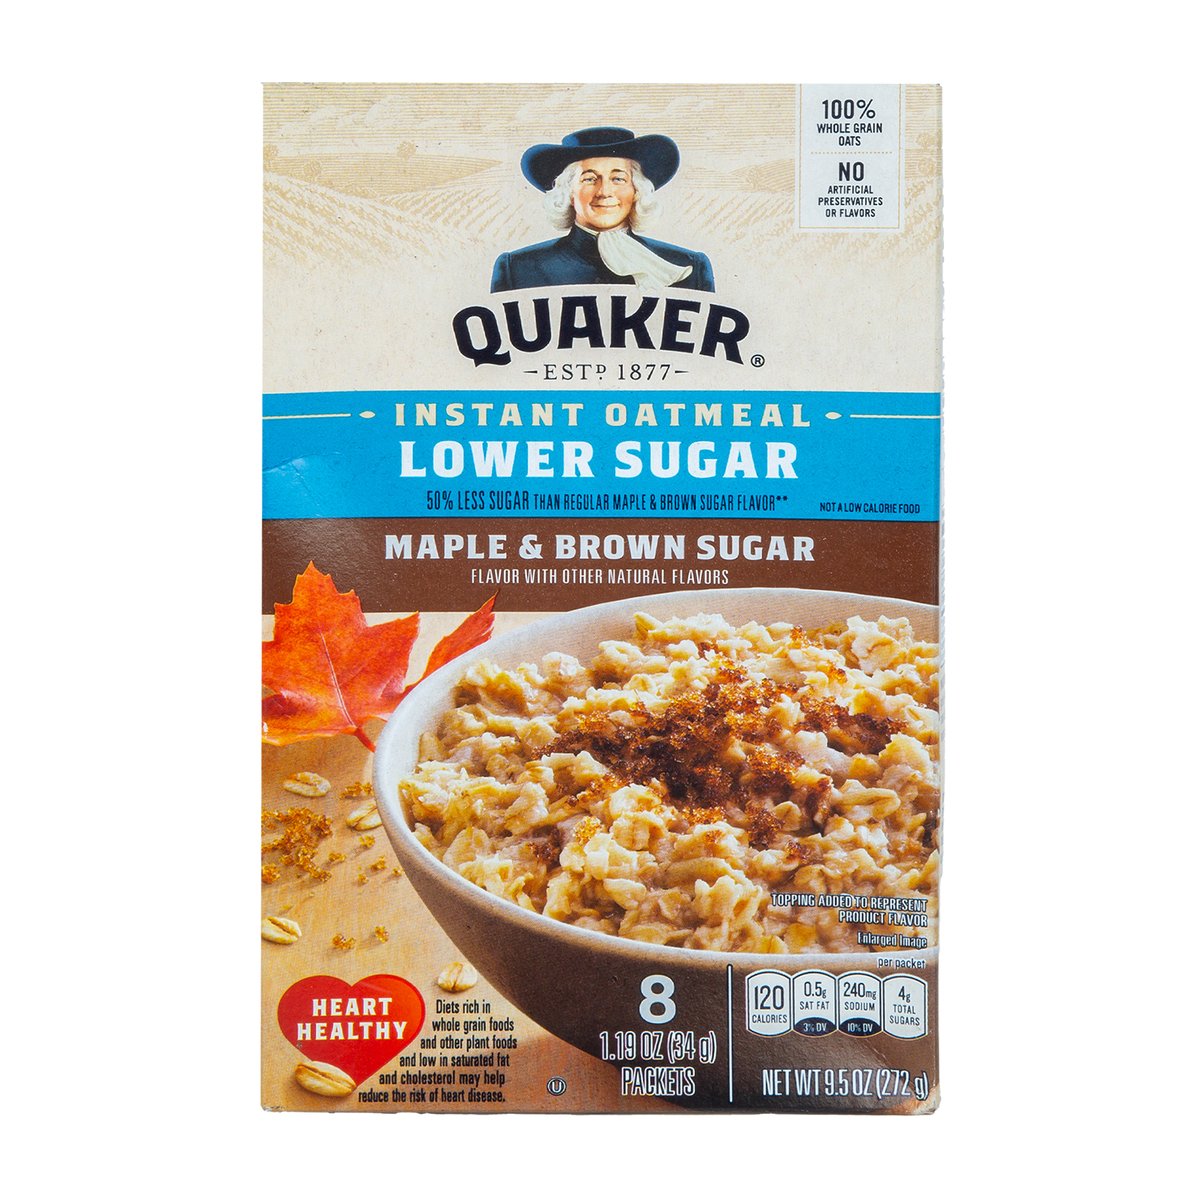 Buy Quaker Maple & Brown Sugar Instant Oatmeal 272 g Online at Best Price | Oats | Lulu UAE in UAE